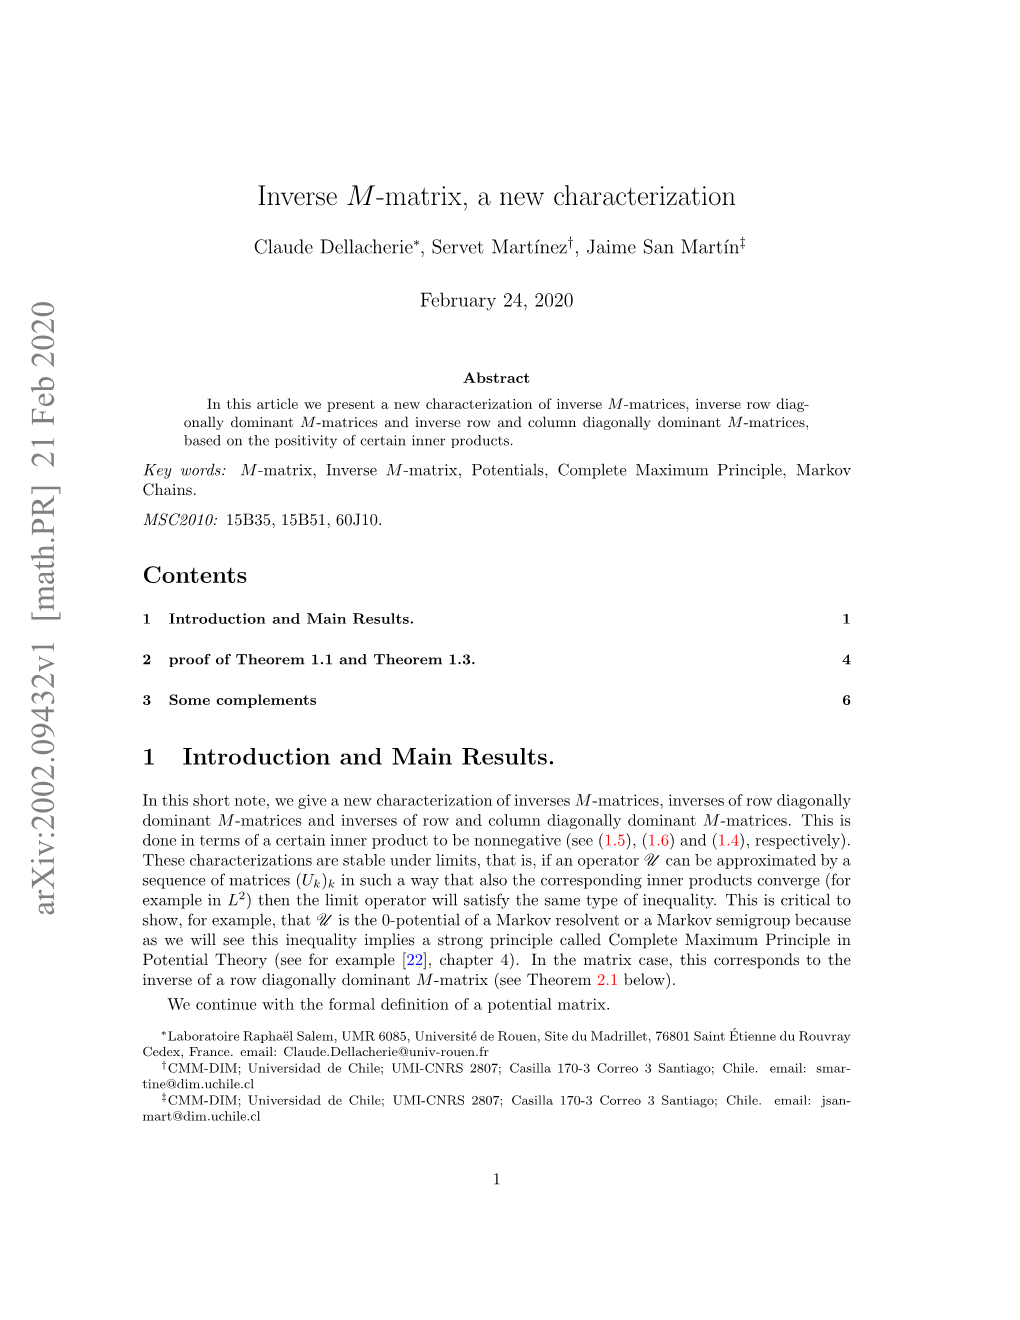 Inverse M-Matrix, a New Characterization